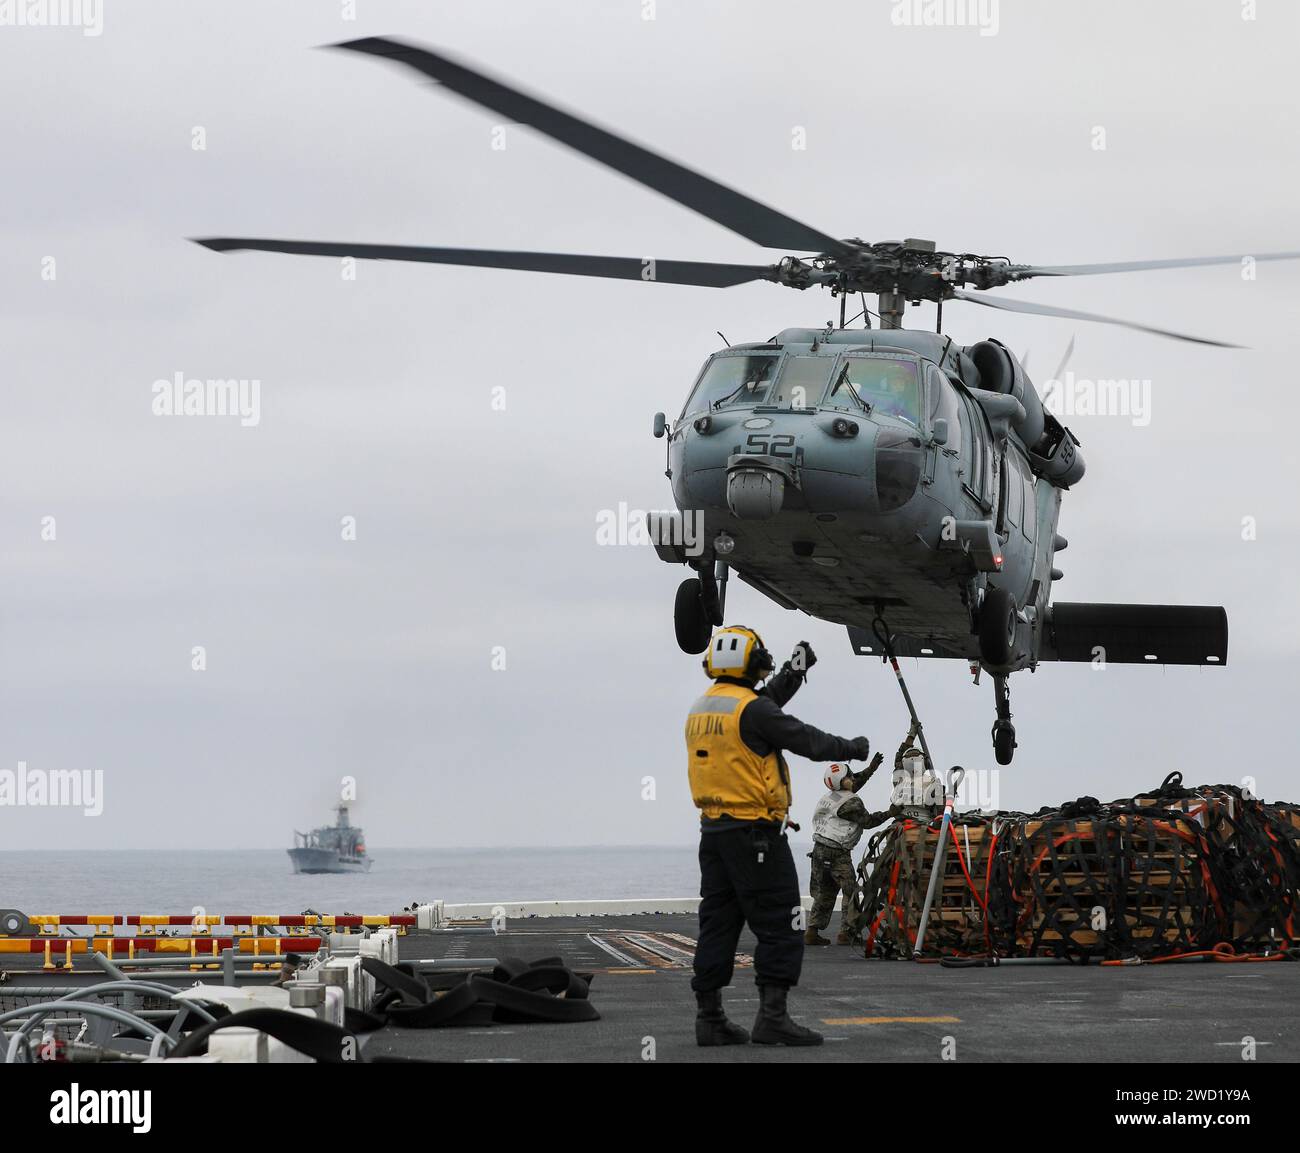 Aviation Boatswain's Mate steuert einen MH-60S Sea Hawk Hubschrauber auf dem Flugdeck der USS Makin Island. Stockfoto